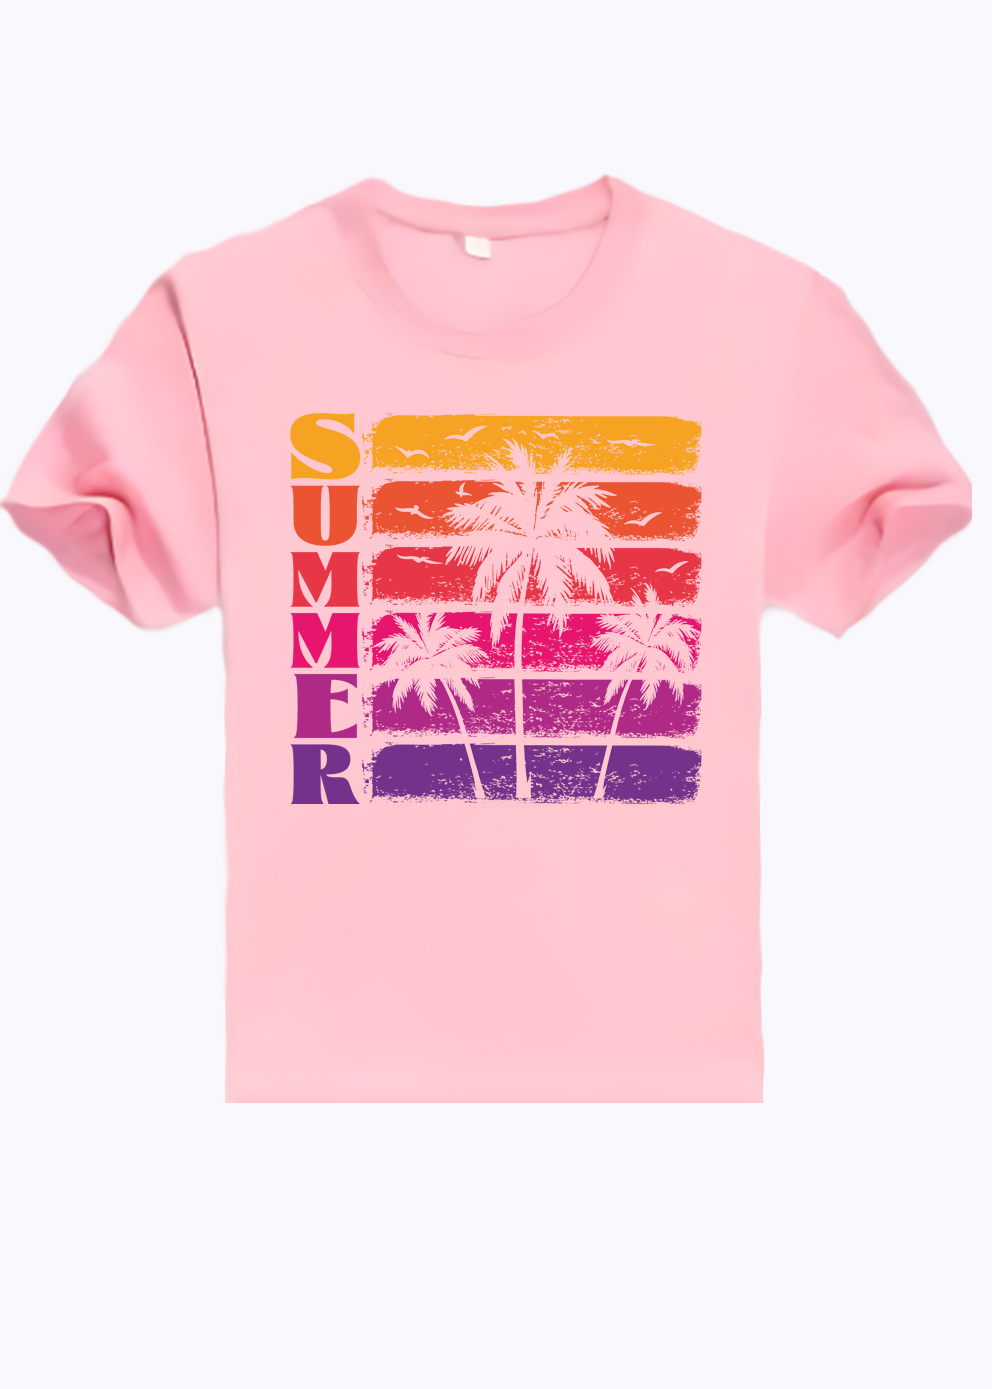 Summer T-Shirt, Cute Women's Graphic Shirt